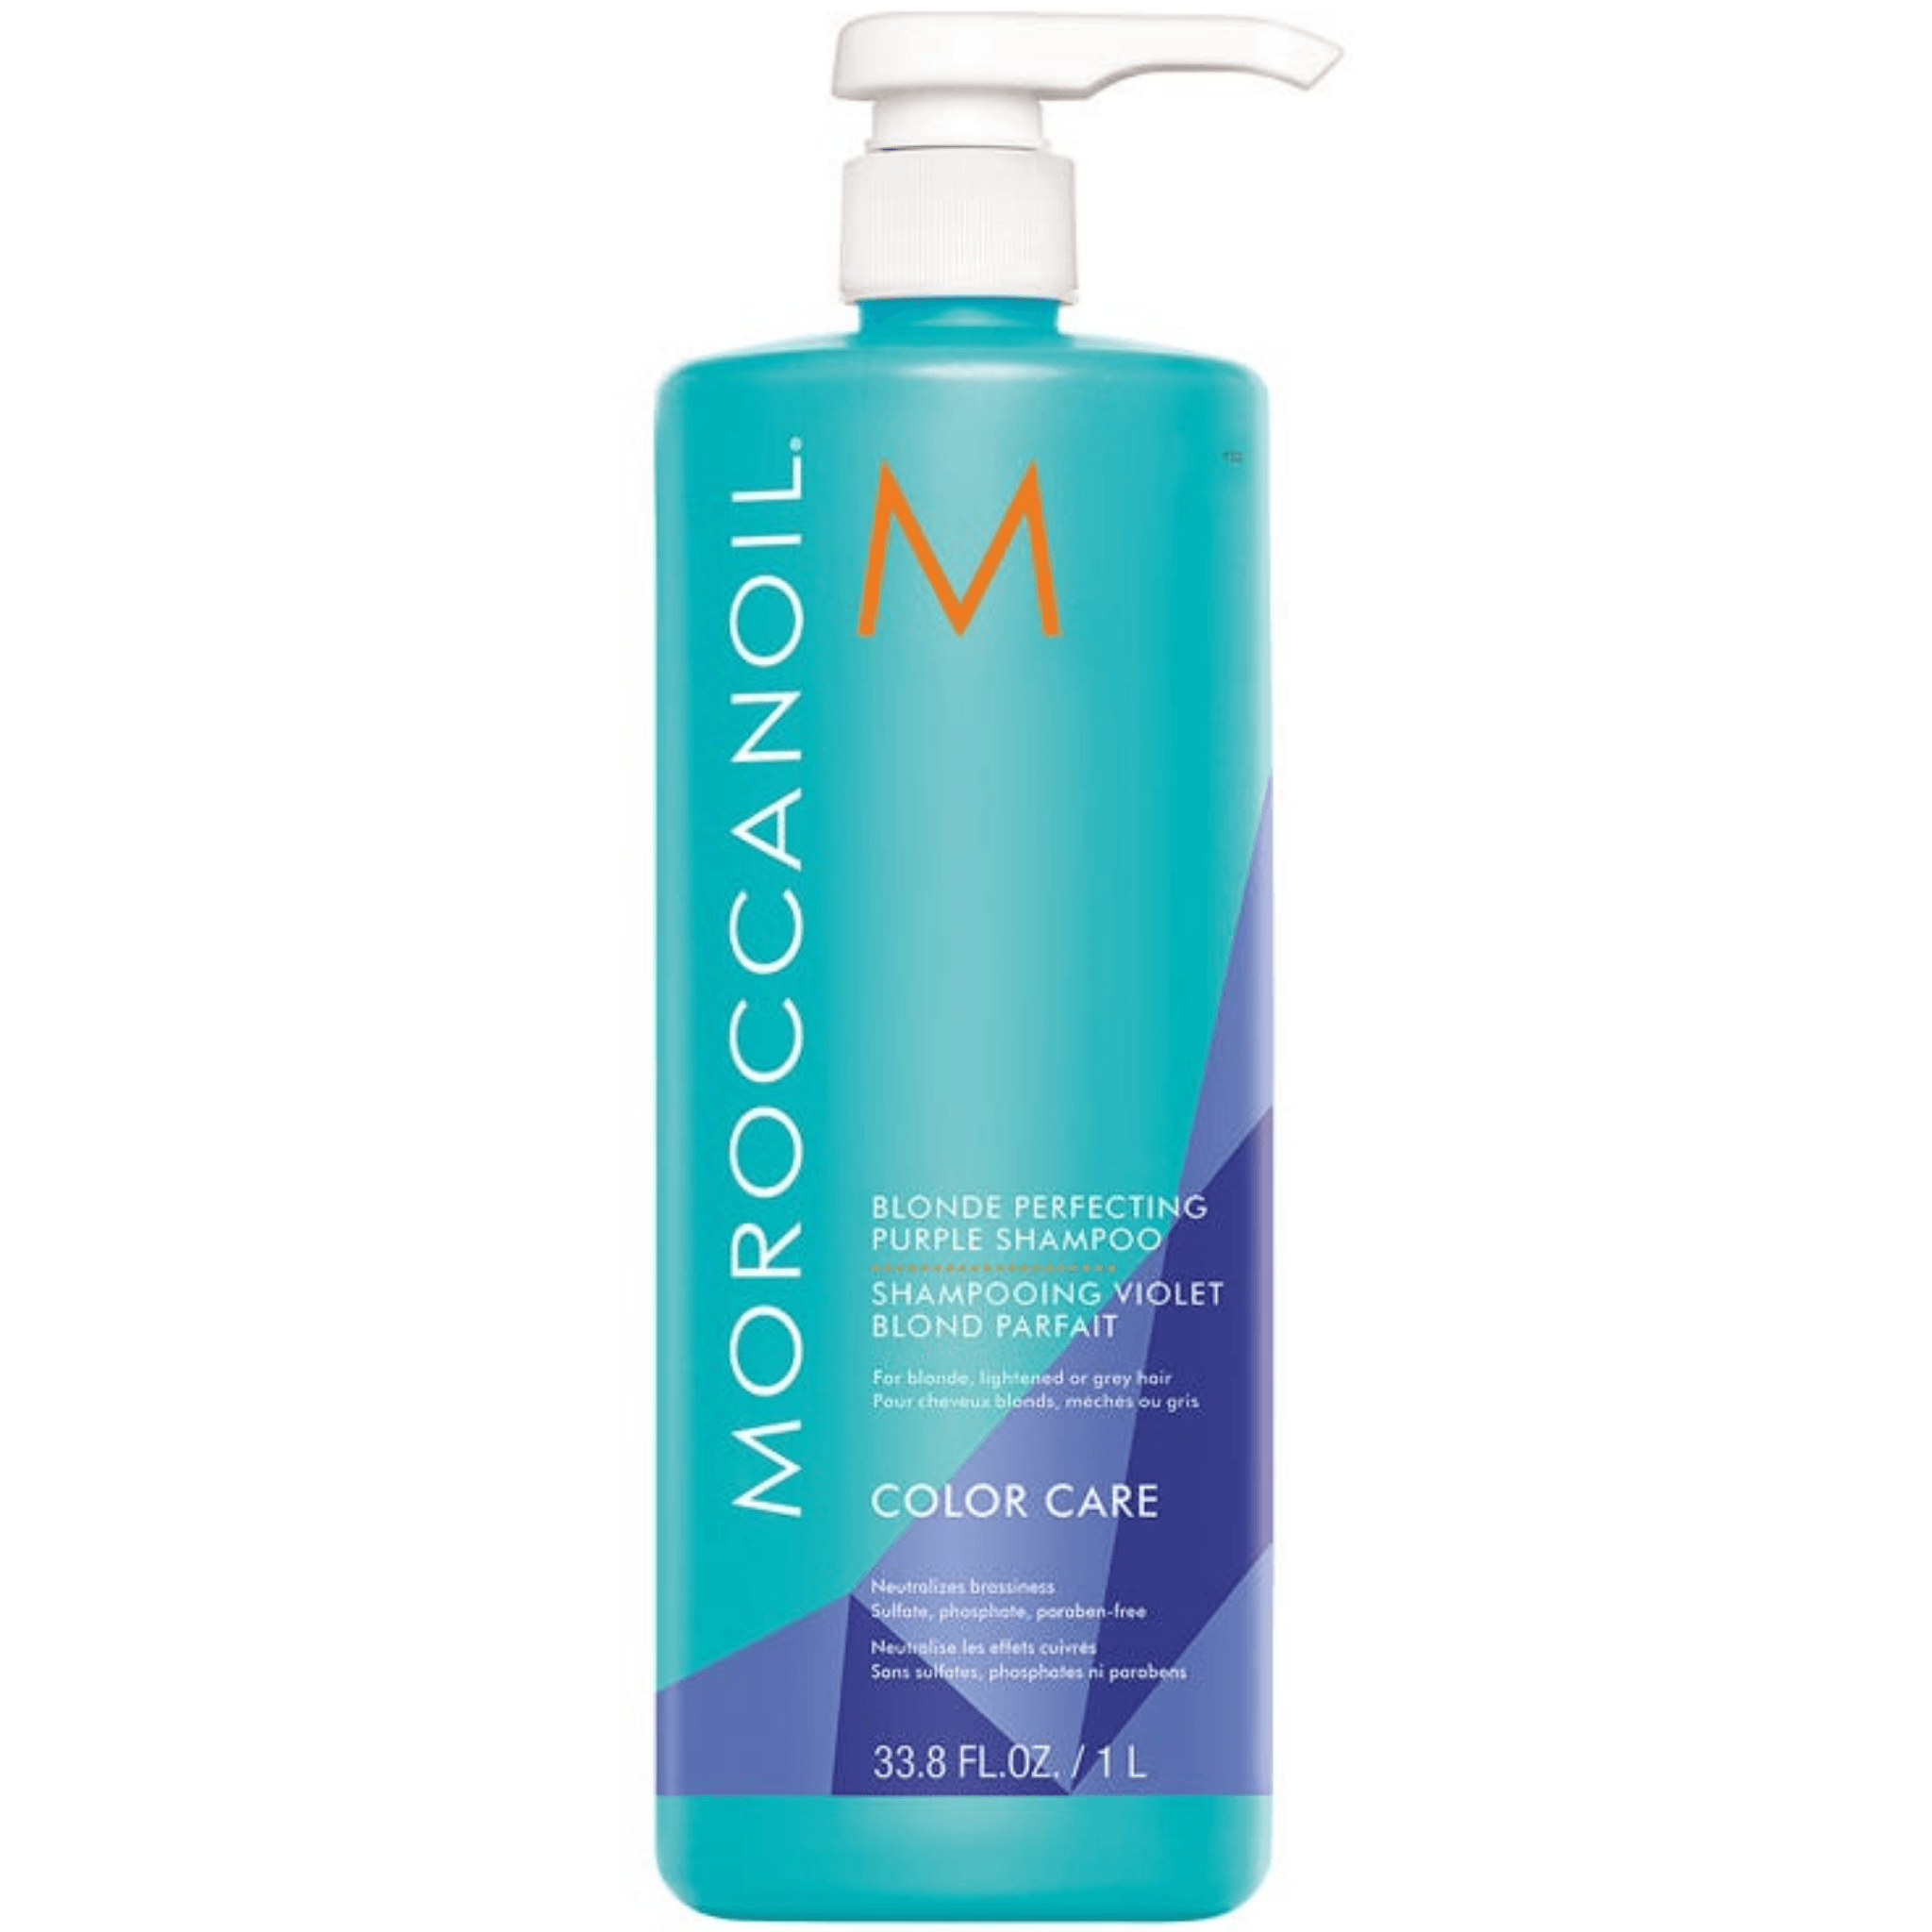 Moroccanoil. Shampoing Violet Blond Parfait Color Care - 1000 ml - Concept C. Shop